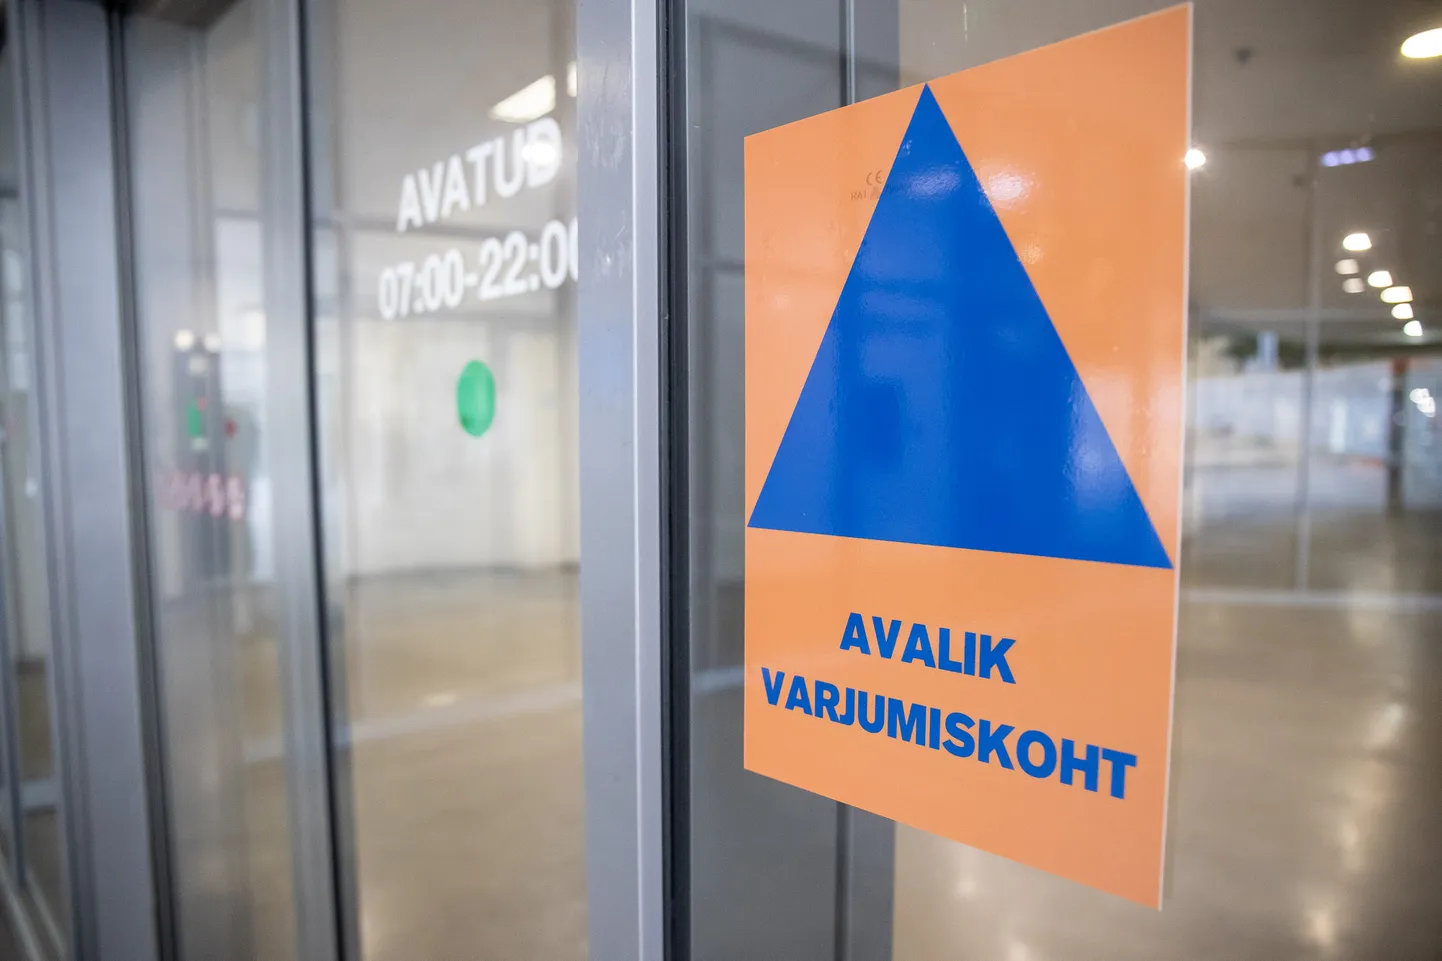 Eesti esimene avalik varjumiskoht avati juunis 2022 Vabaduse väljaku all.